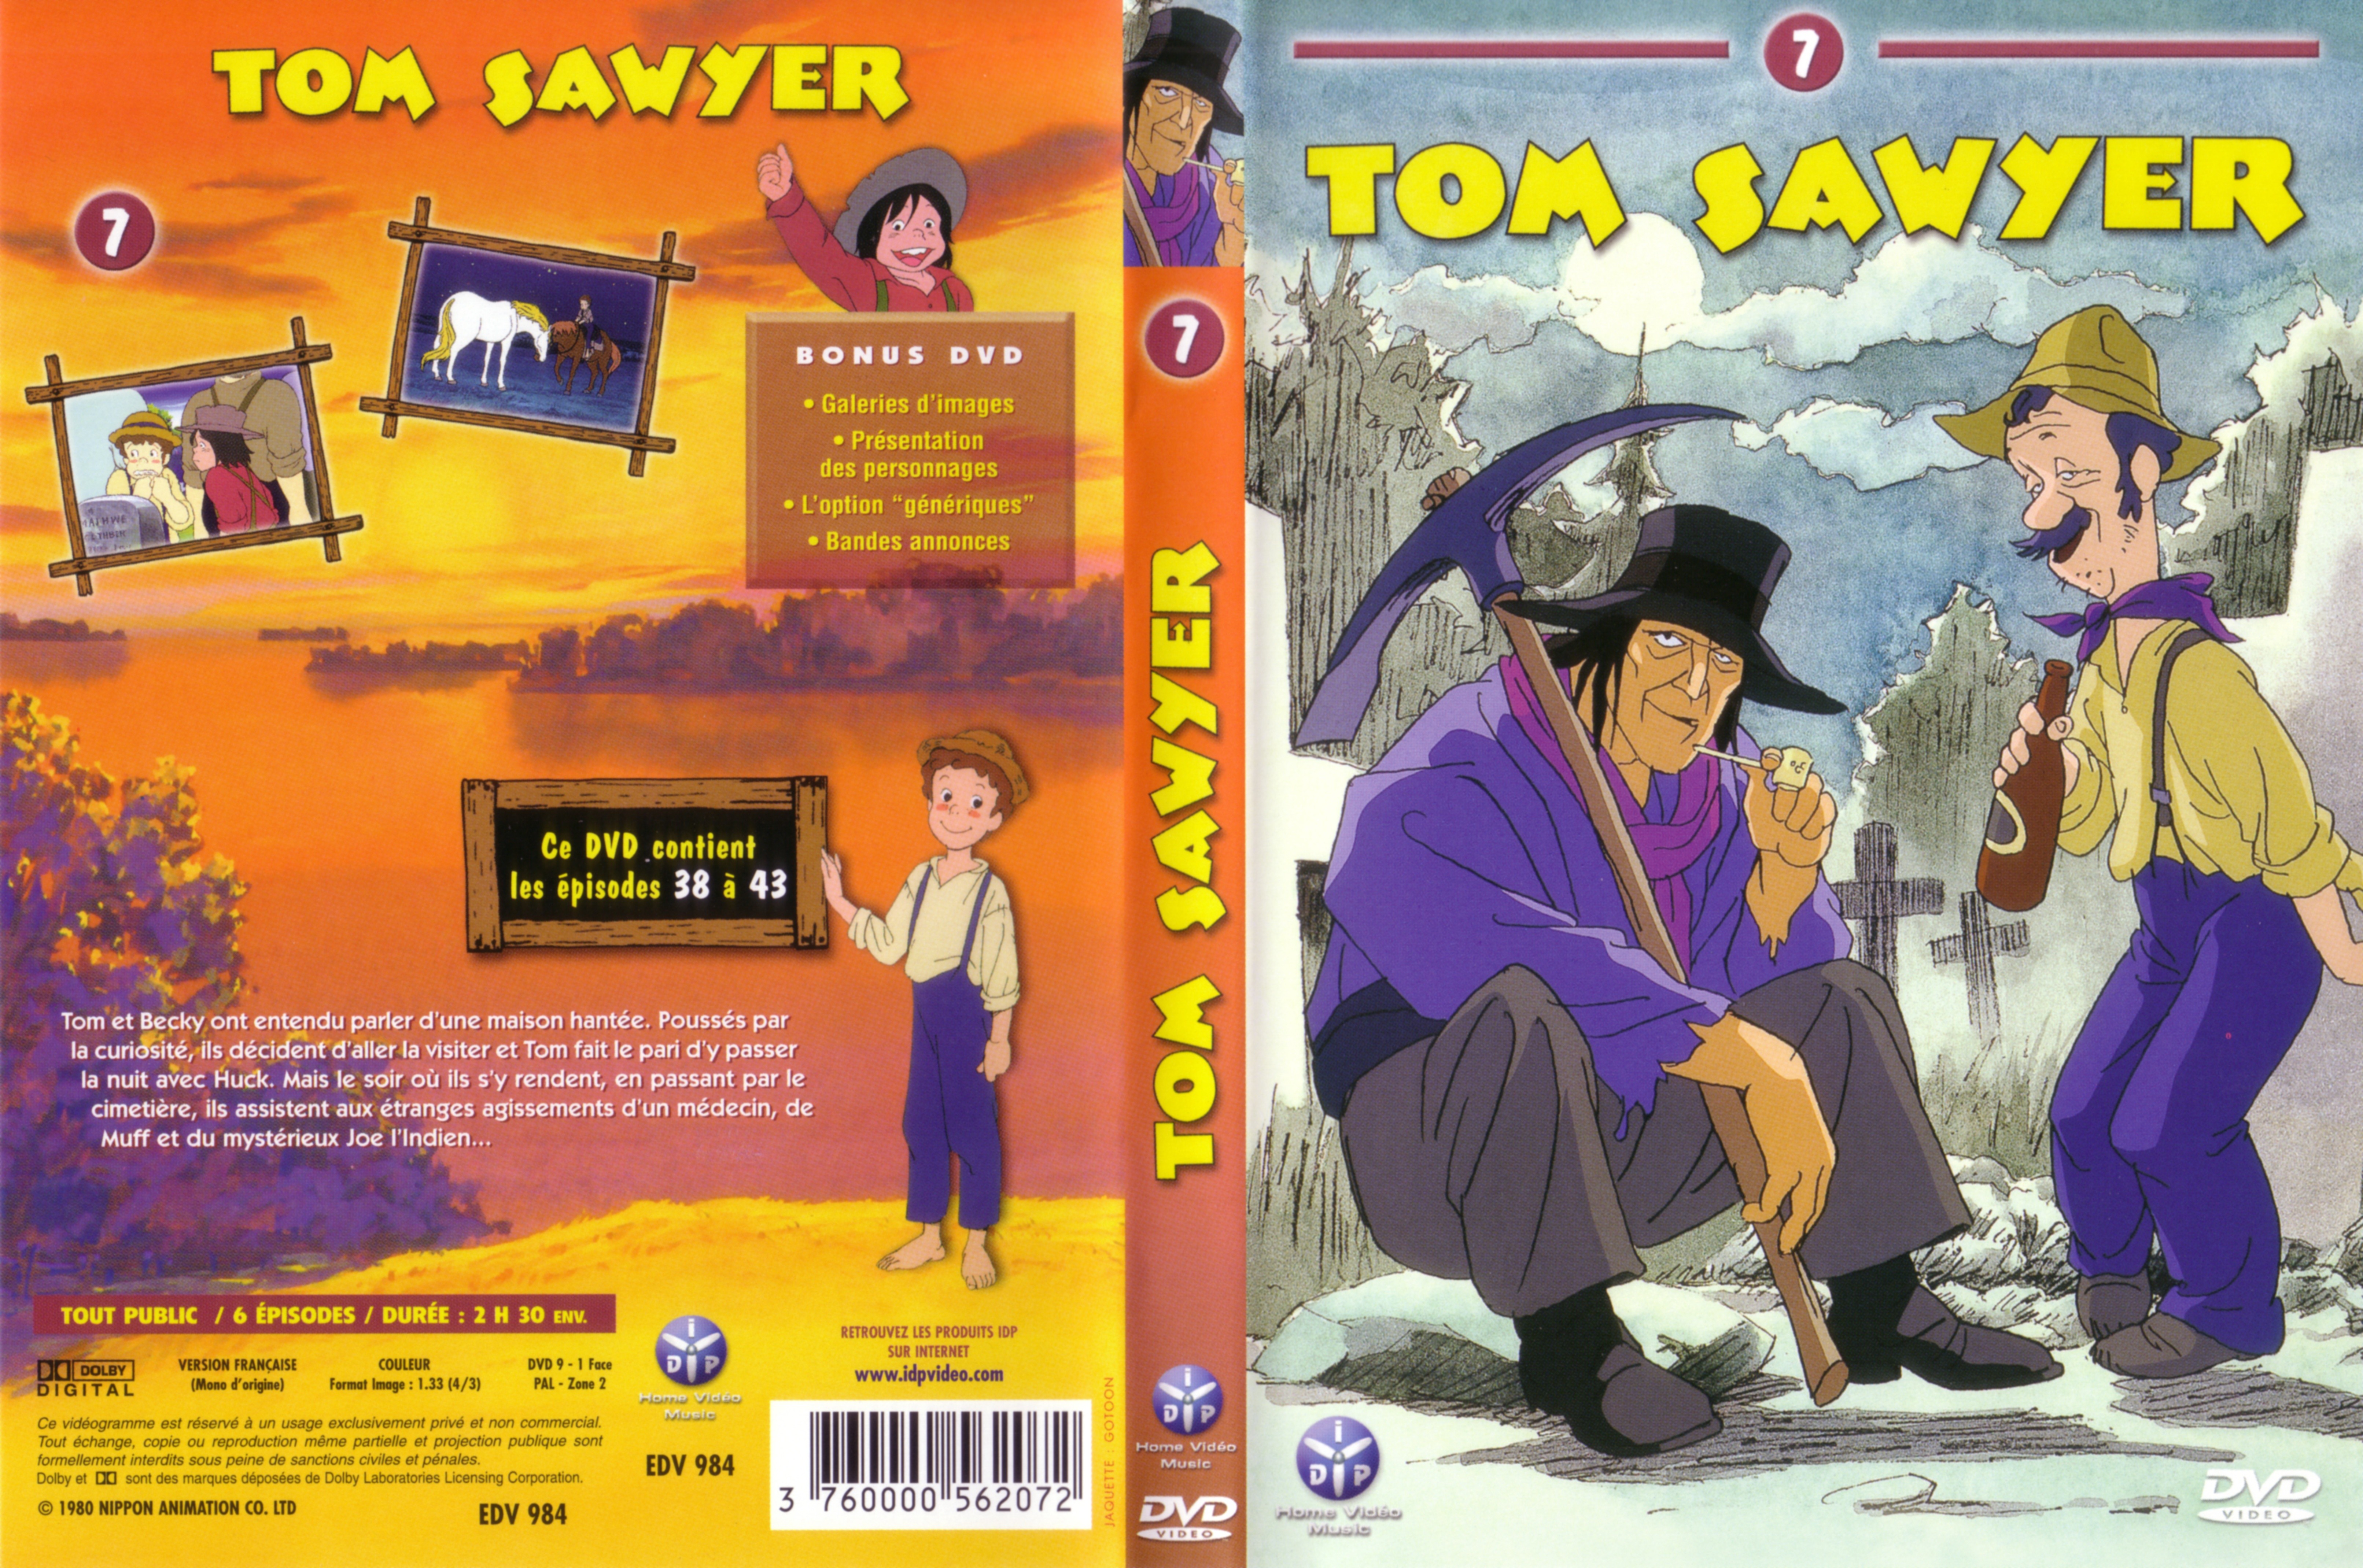 Jaquette DVD Tom Sawyer vol 7 v2